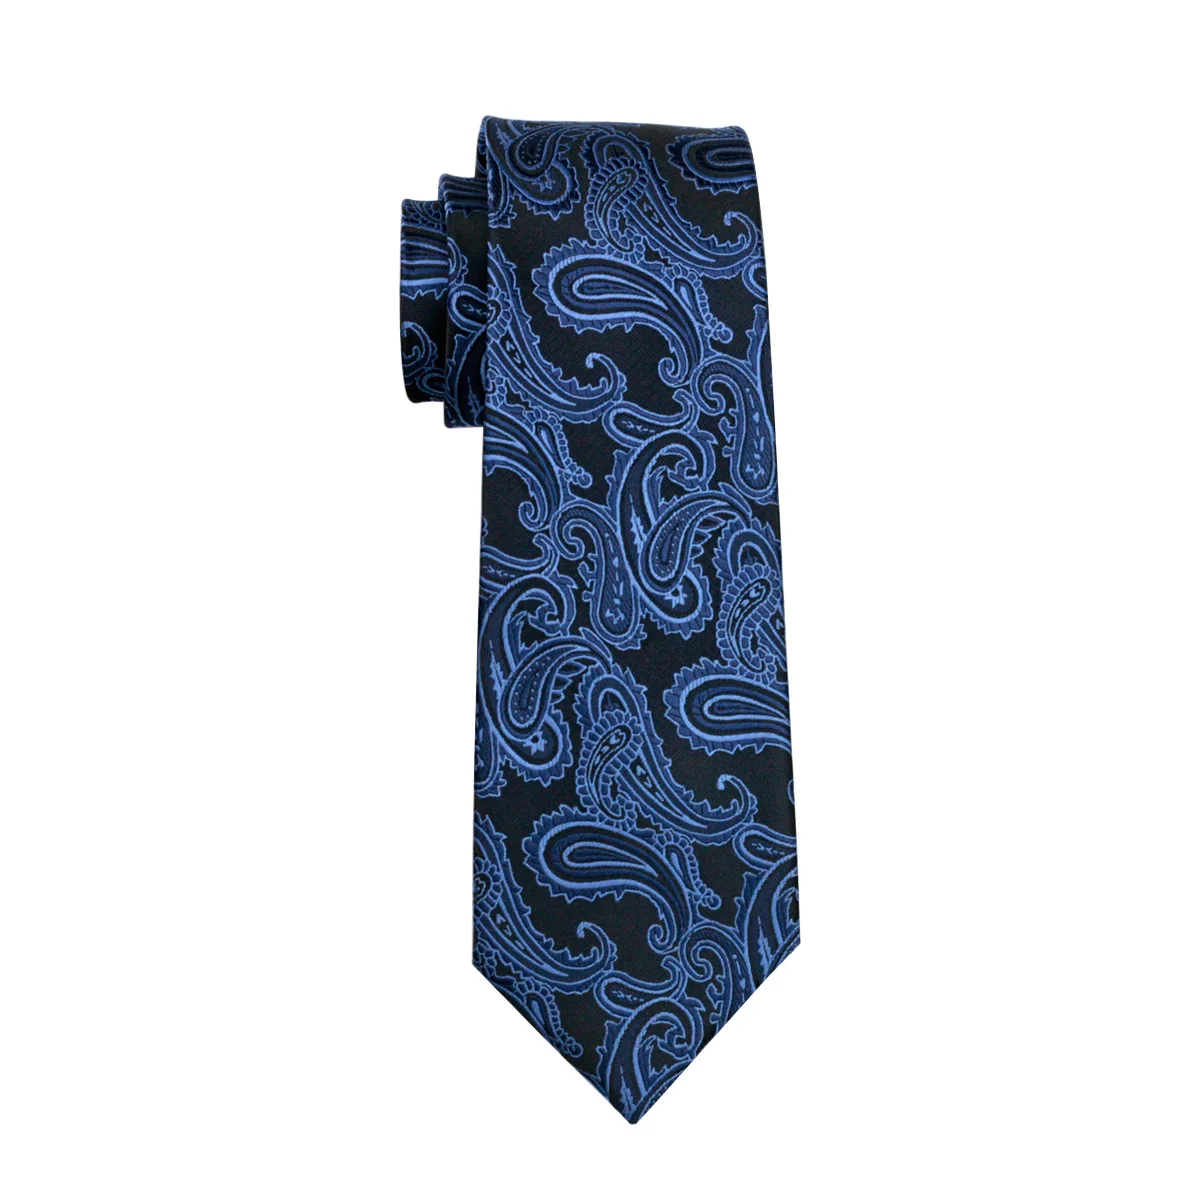 FA-981 Barry. Wang мужские галстуки голубой Пейсли шёлк-жаккард галстук носовой платок запонки набор мужской бизнес подарок галстуки для мужчин